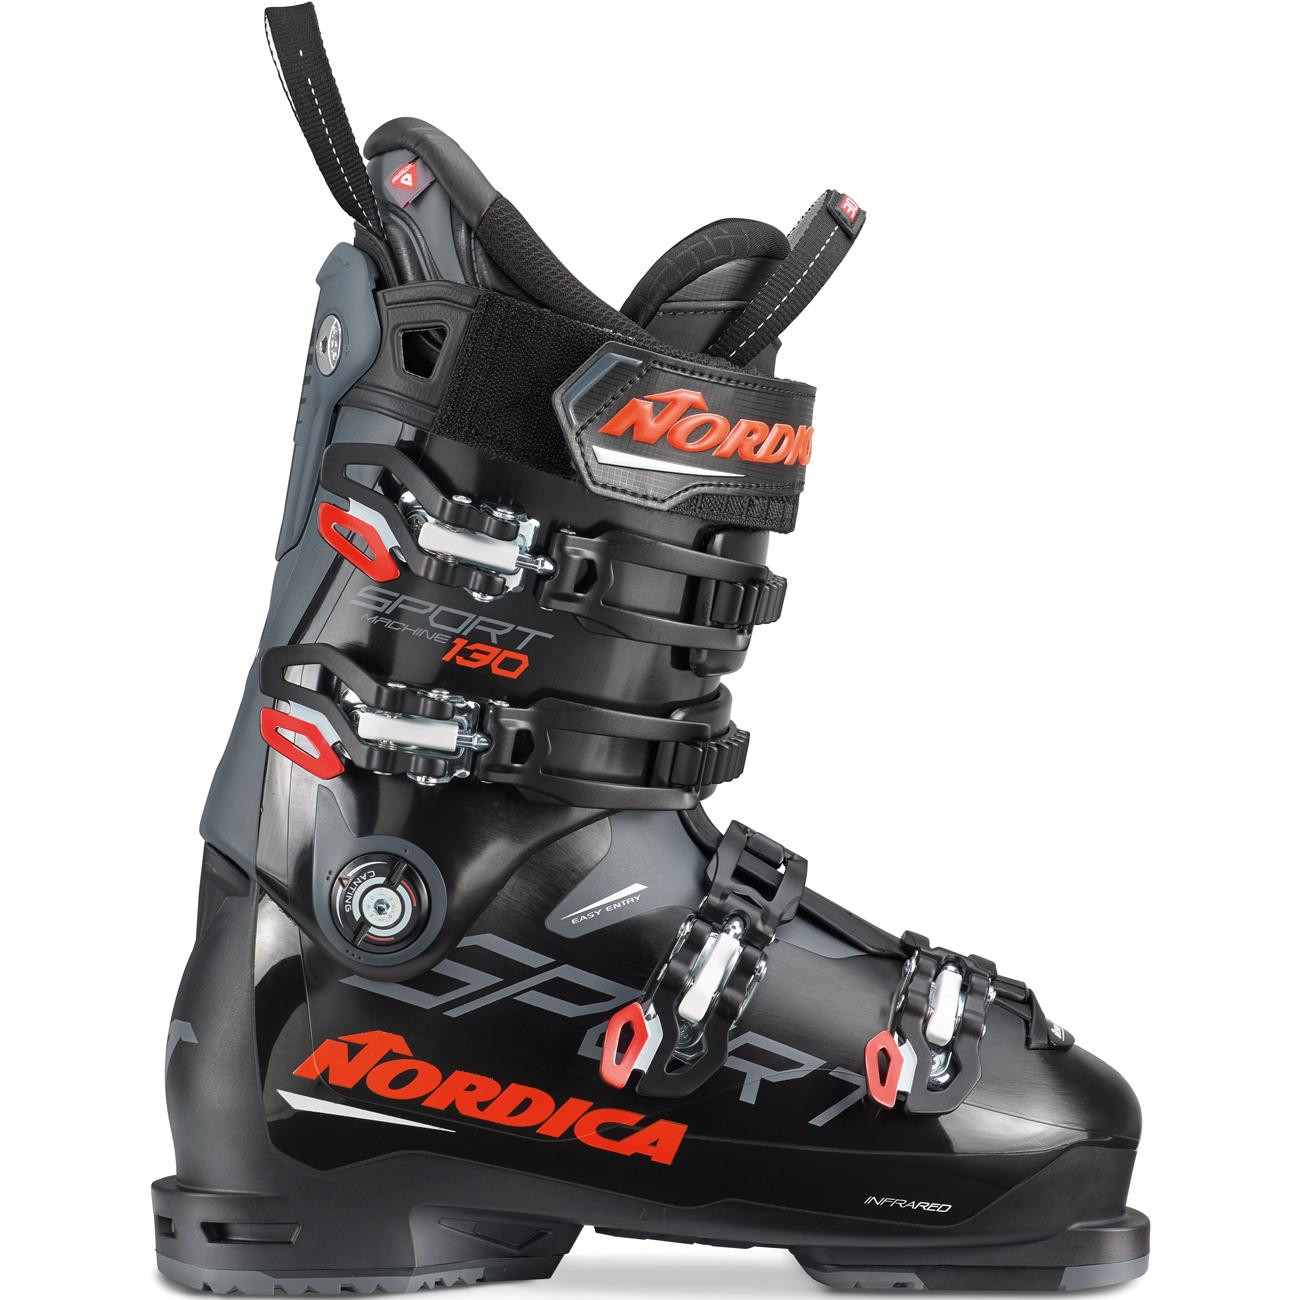 NORDICA Sportmachine 130 Skischuhe 2021/22